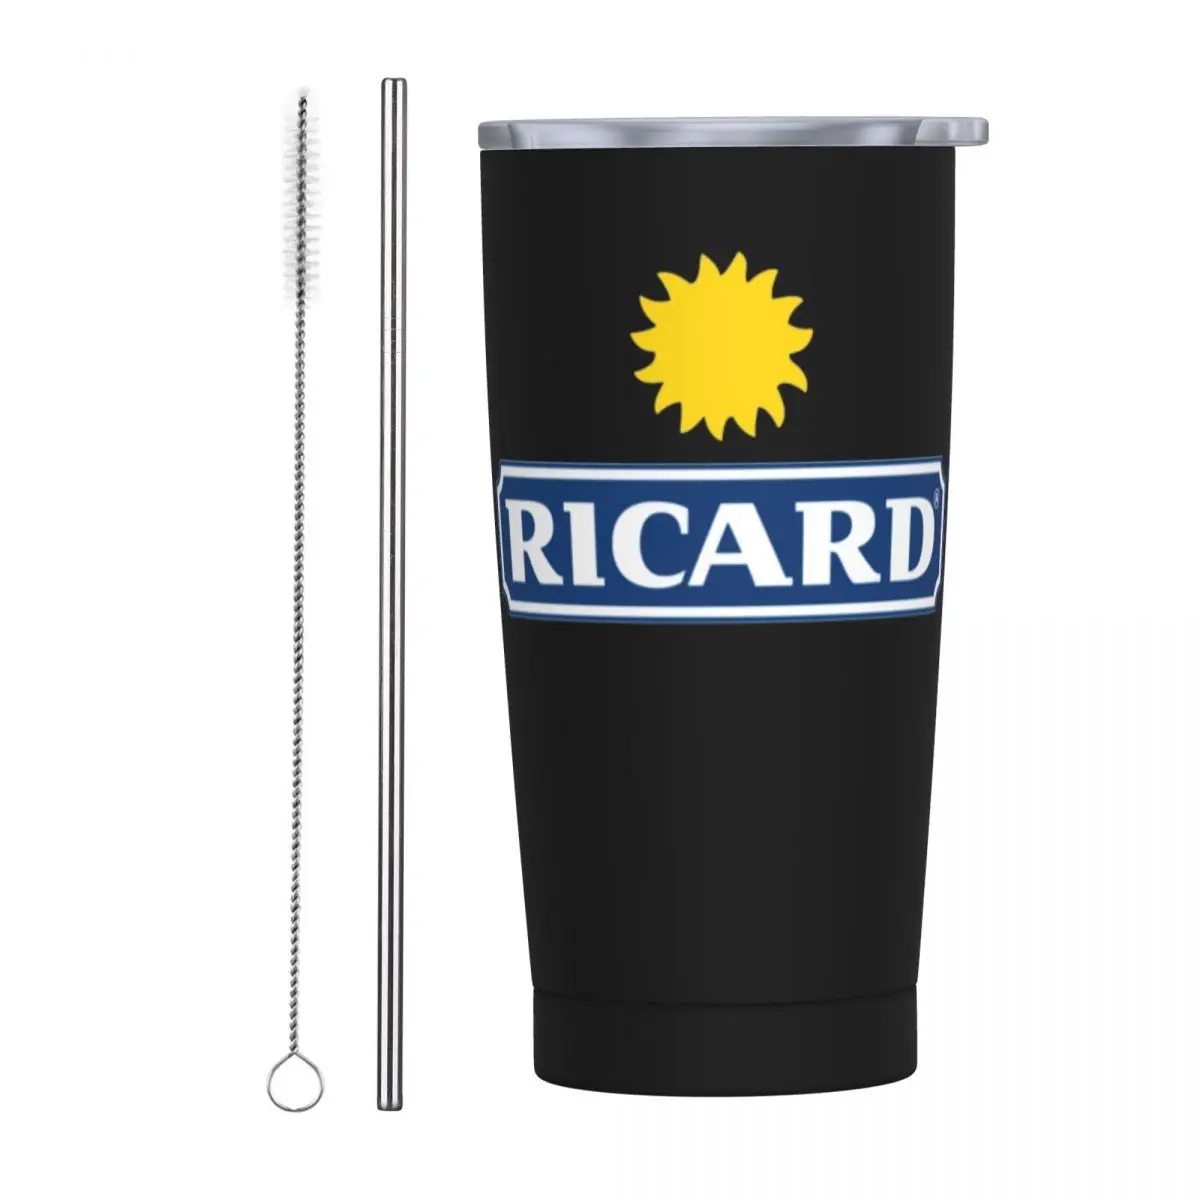 

Кружка Ricard Tumbler с соломинкой и крышкой, стакан из нержавеющей стали с двойными стенками и вакуумной изоляцией для холодного и горячего кофе, 20 унций